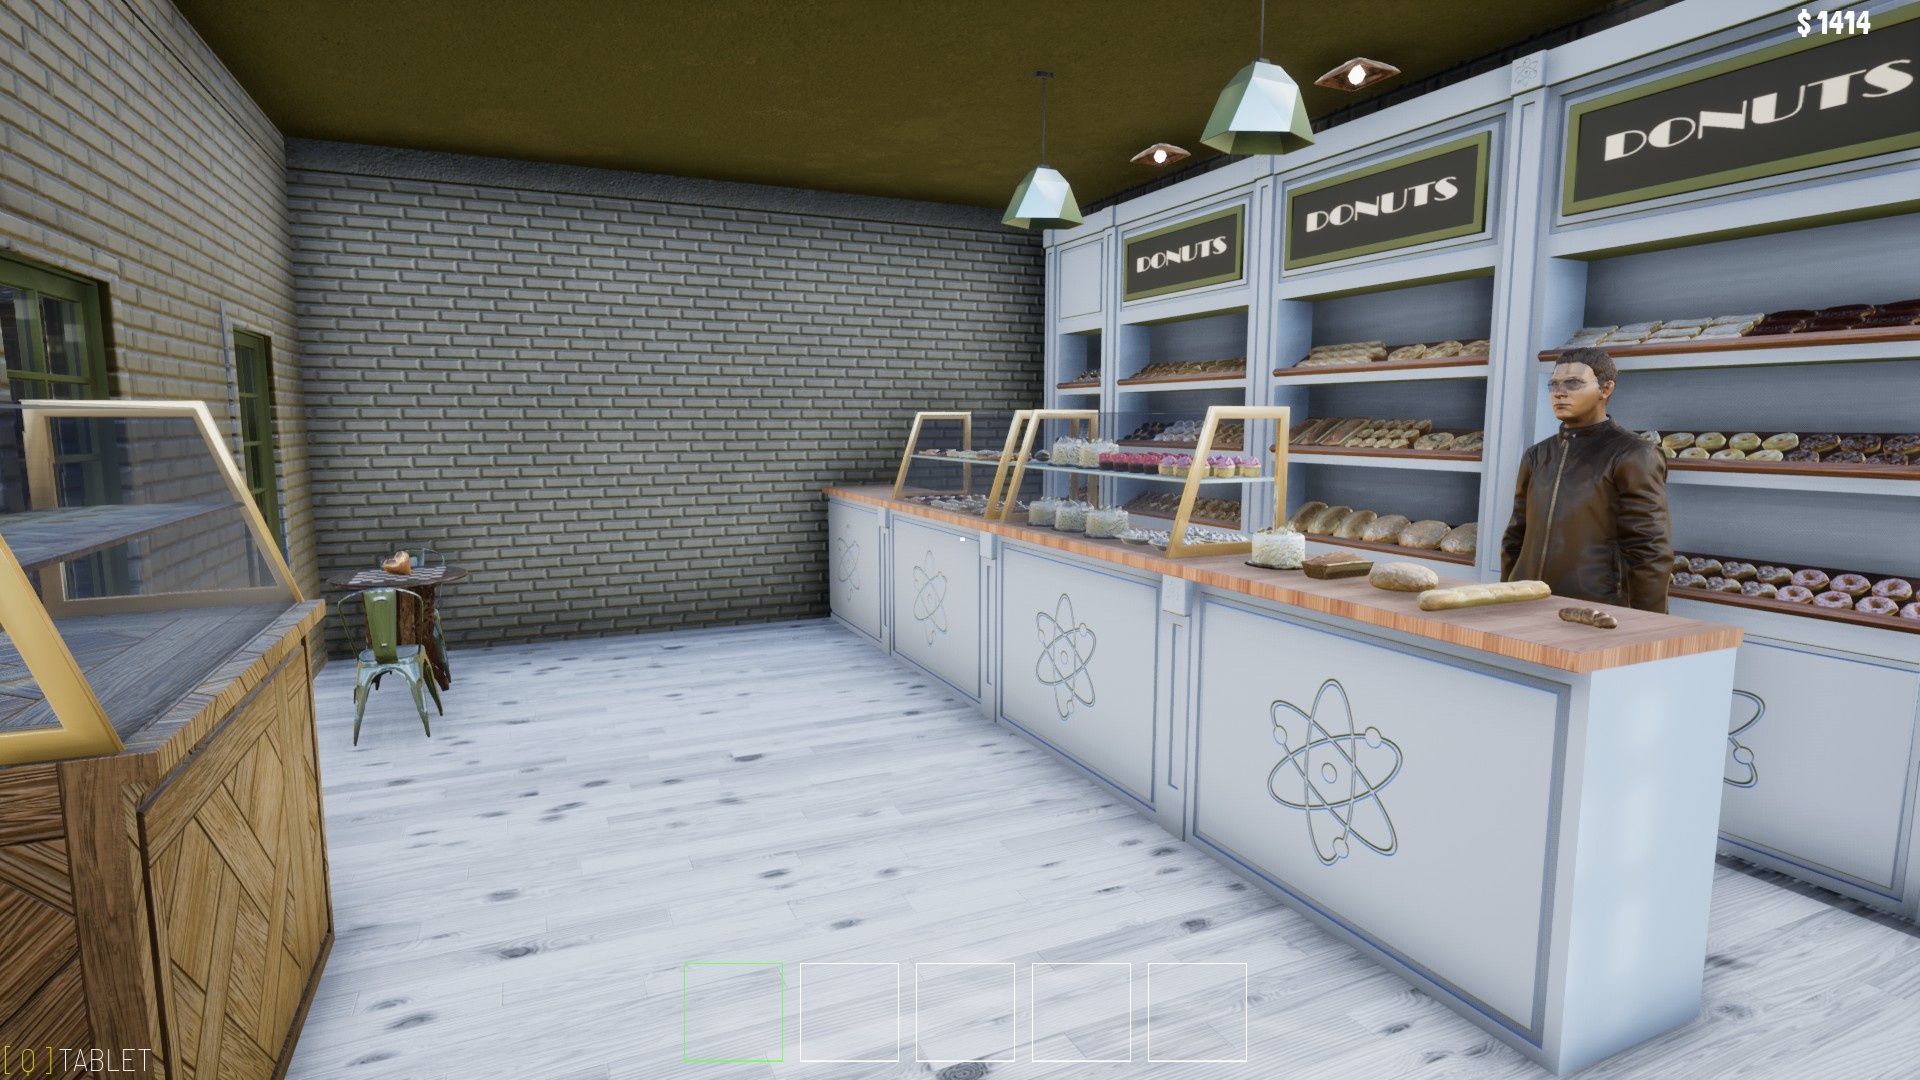 (V Atomové pekárně kupujeme několik druhů chleba, jen jedna z budov trpí naprosto nevhodným designem).